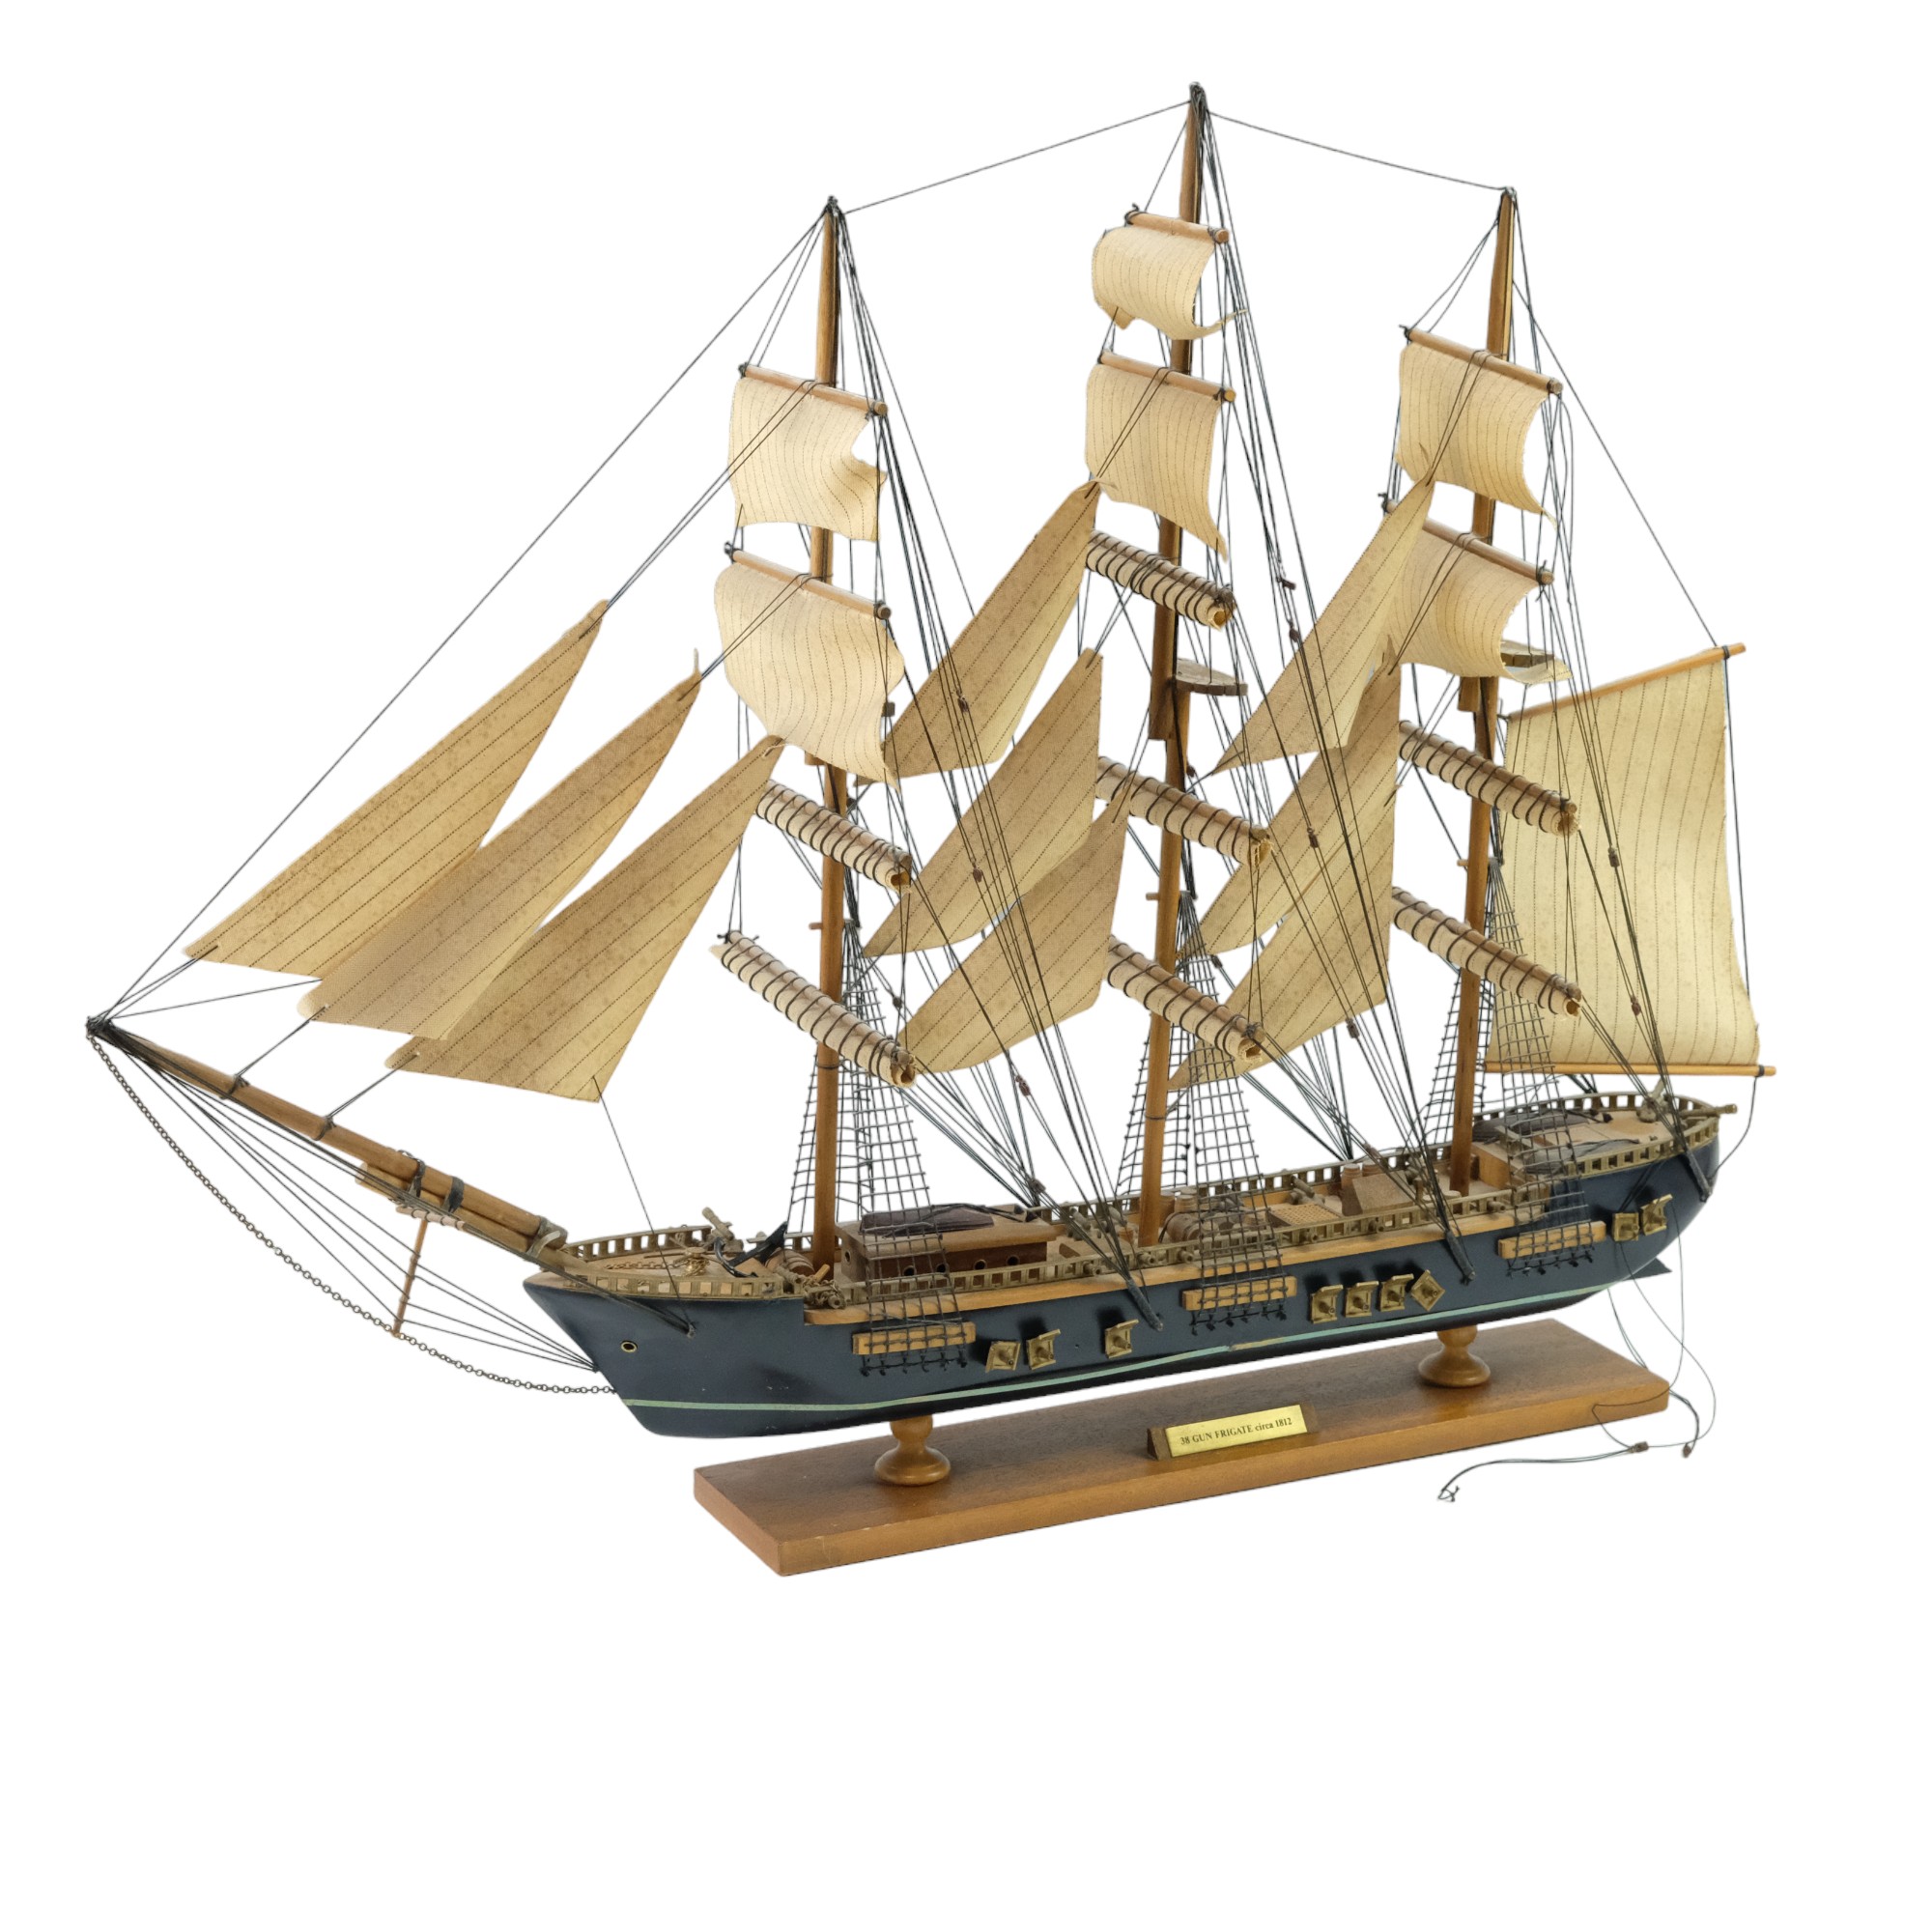 A wooden model ship, being a 38 Gun Frigate, circa 1812, 77 cm x 62 cm high